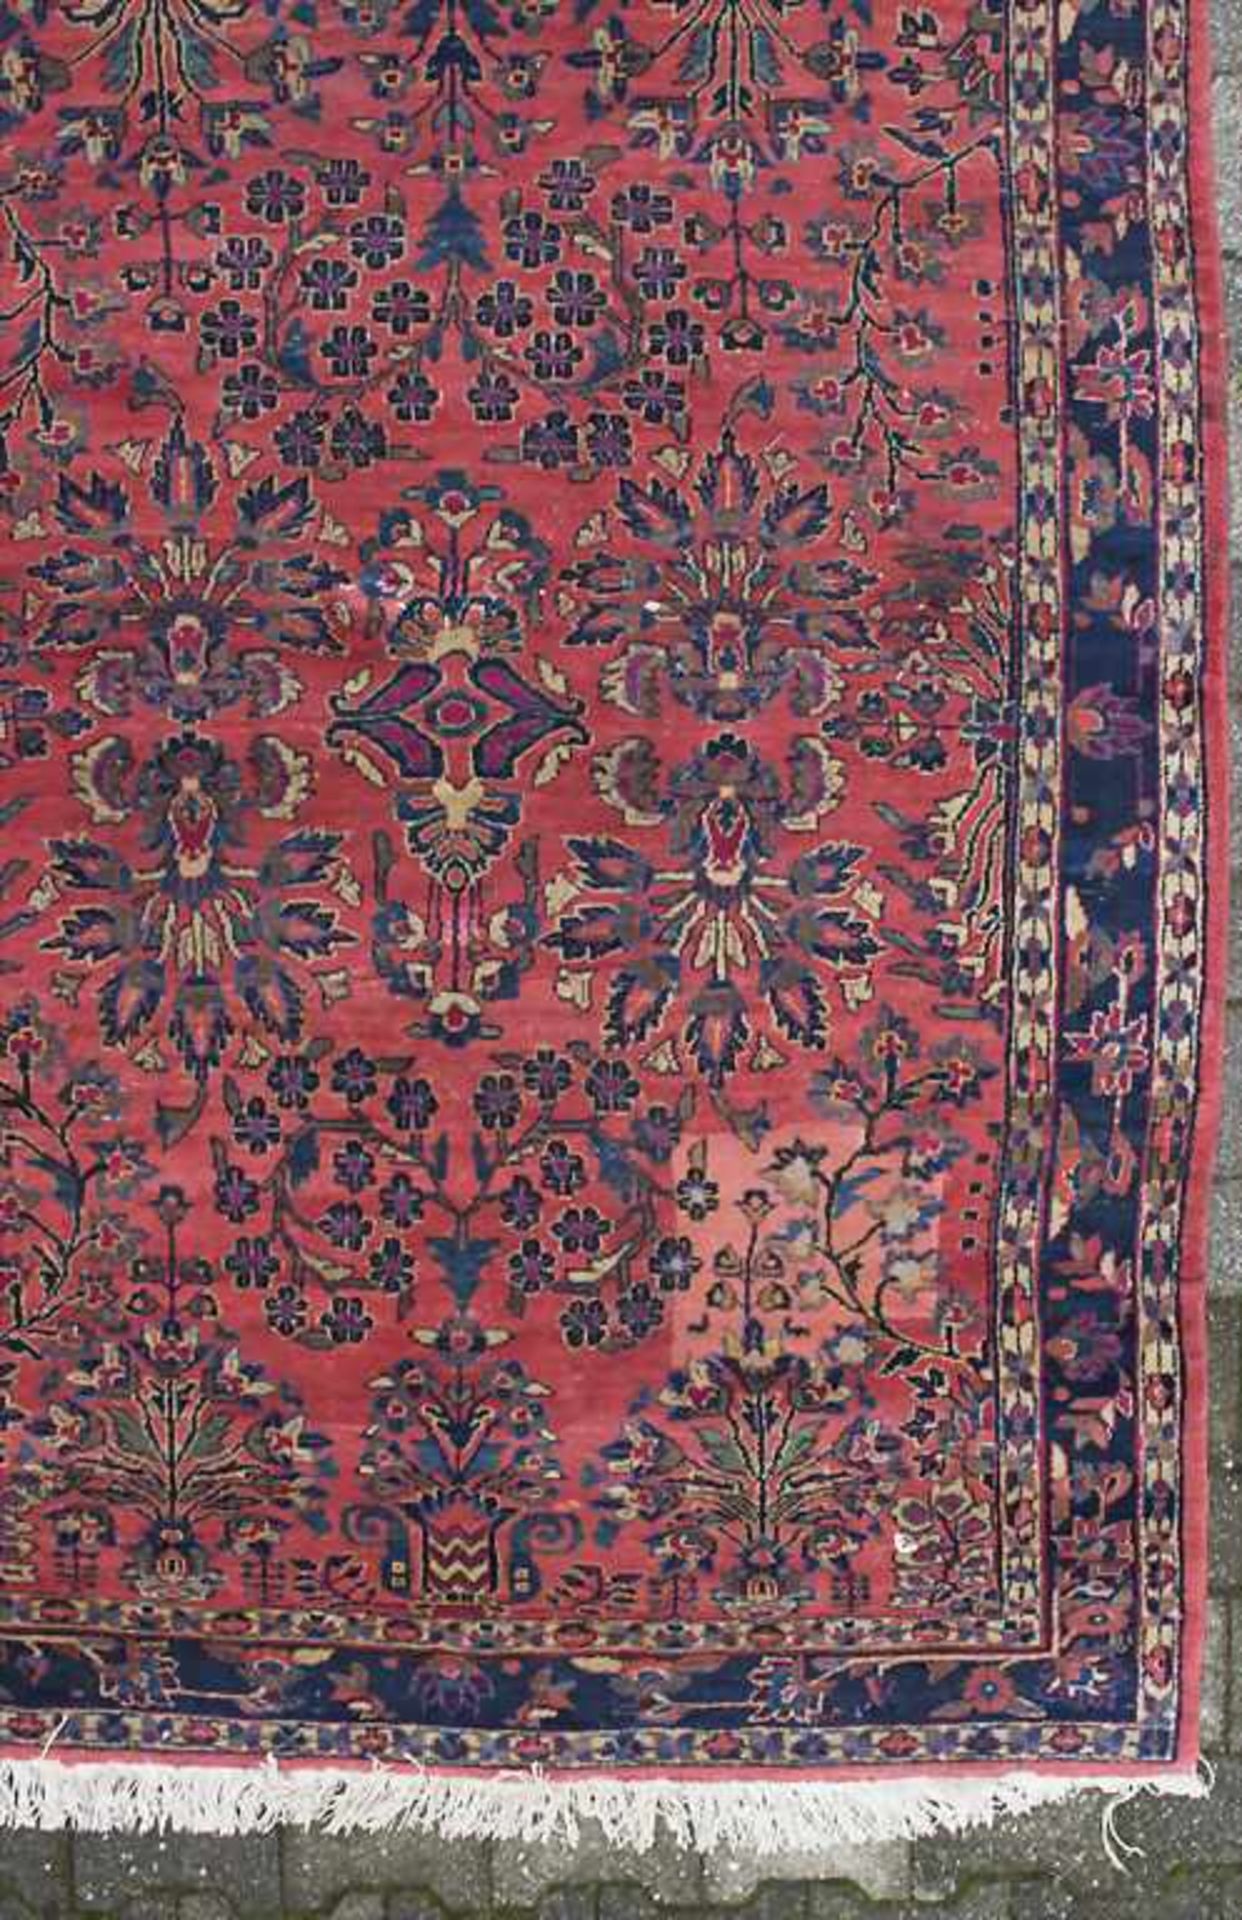 Orientteppich 'Saruk' / An oriental carpet 'Saruk'Material: Wolle auf Baumwolle, Maße: 200 x 140 cm, - Bild 4 aus 8